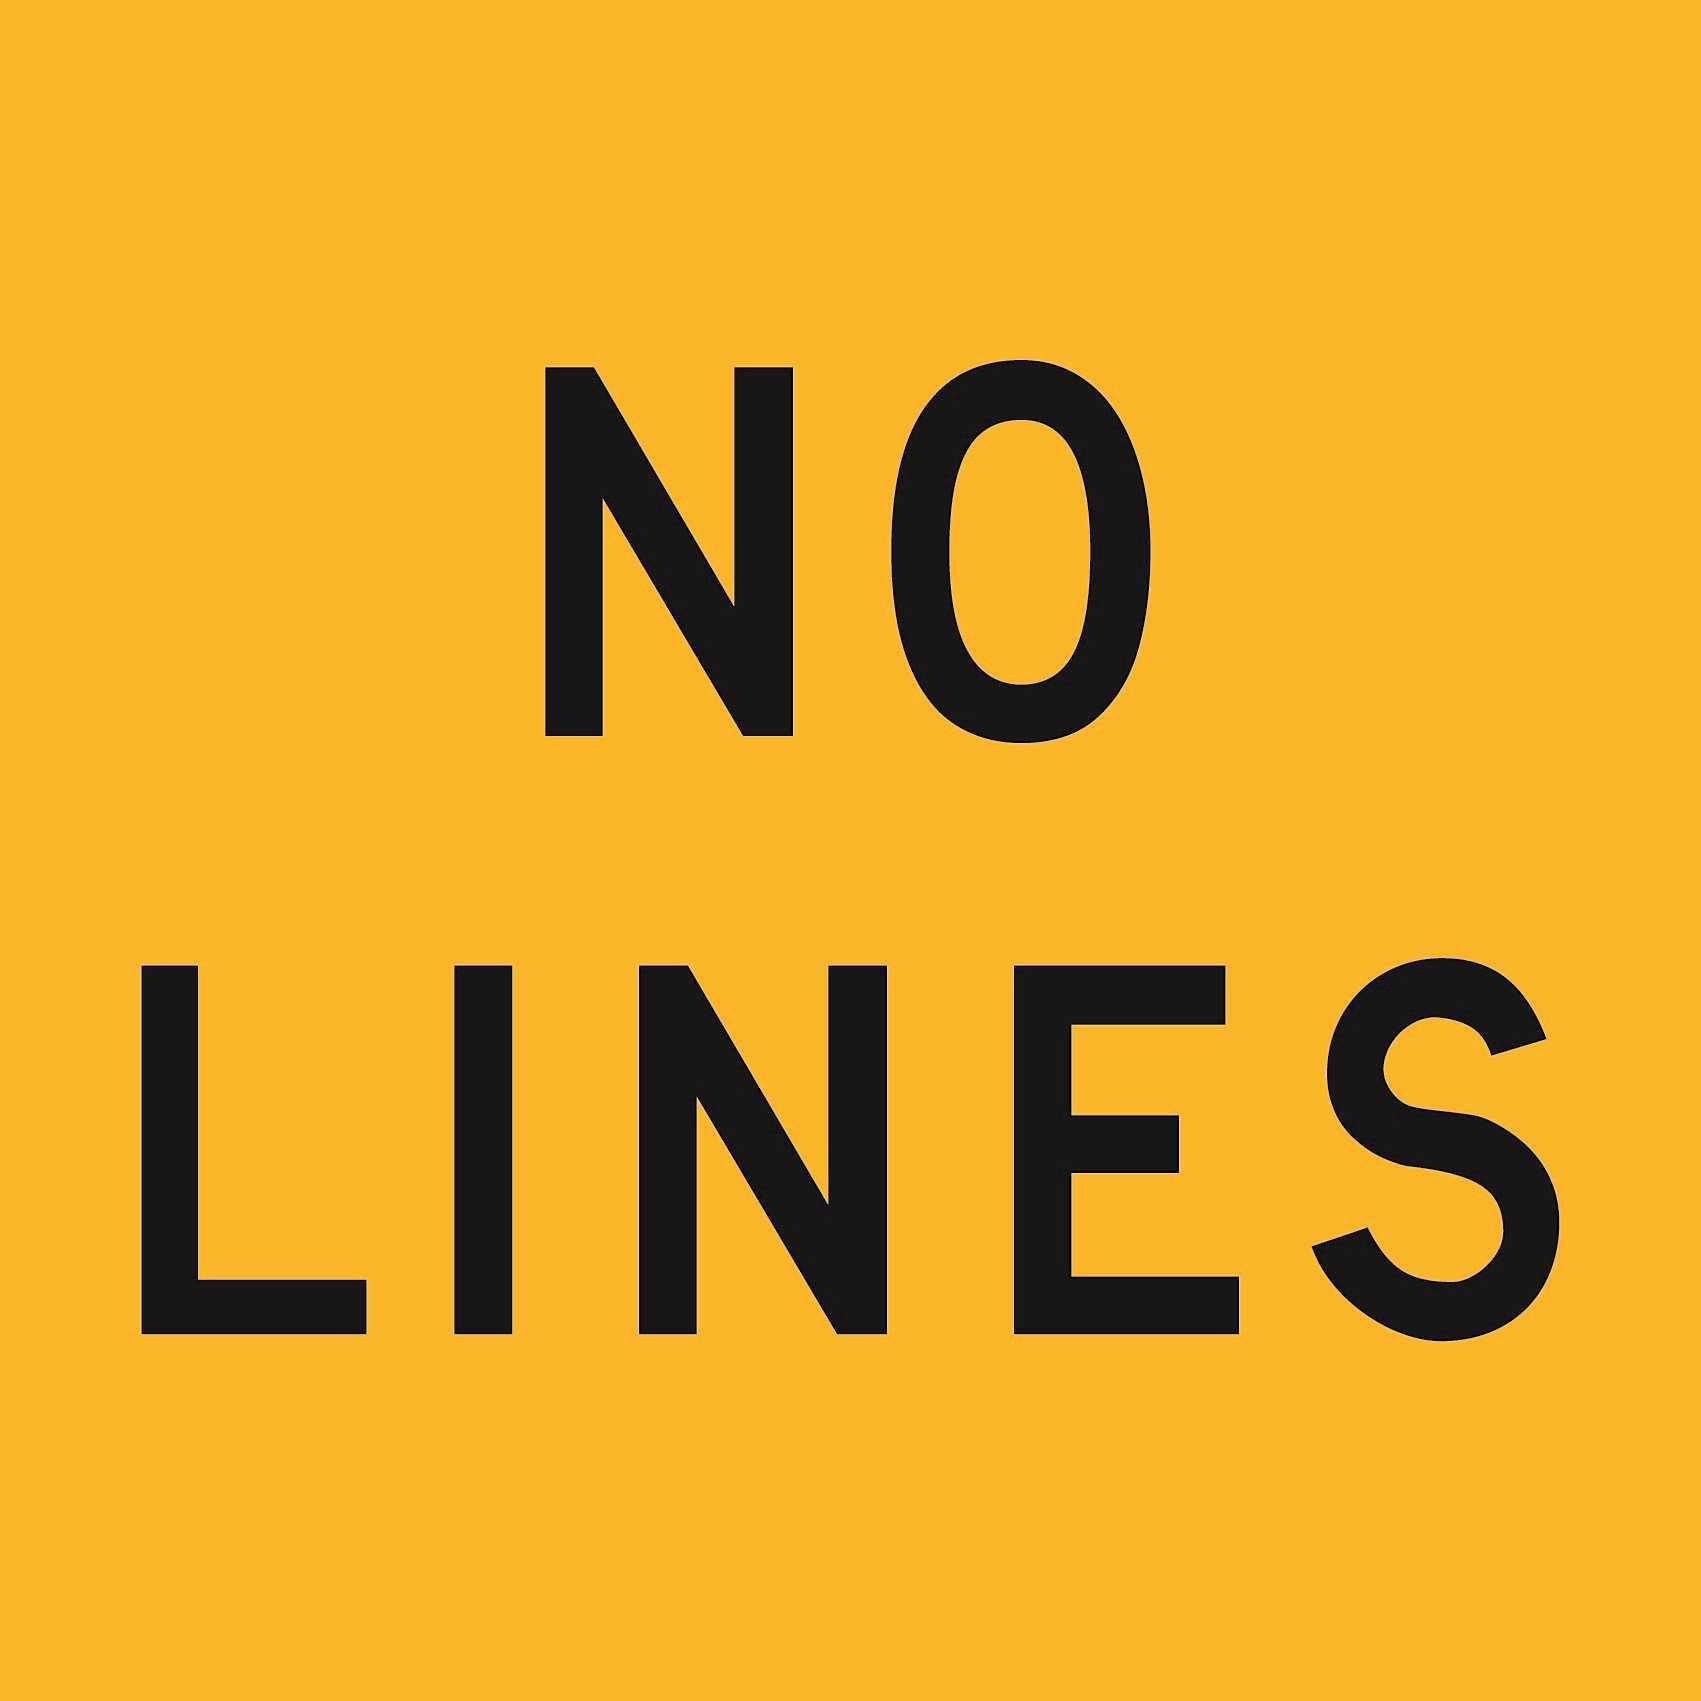 No Lines (Class1) 600 x 600 Corflute